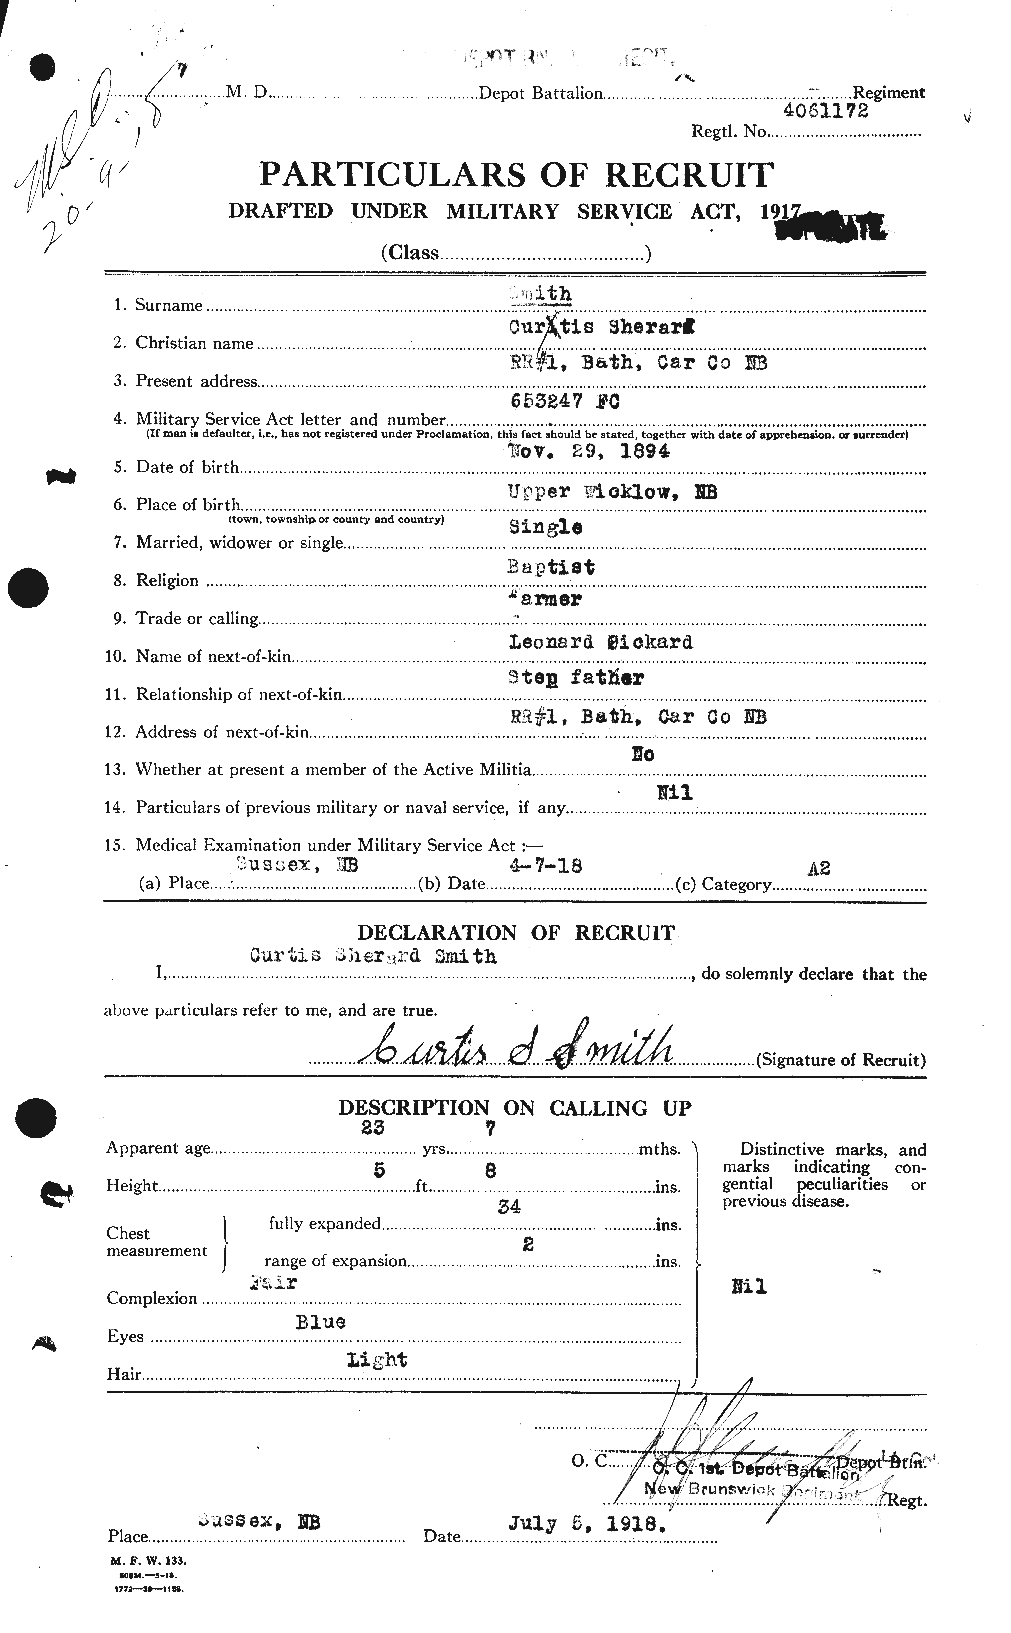 Dossiers du Personnel de la Première Guerre mondiale - CEC 102684a